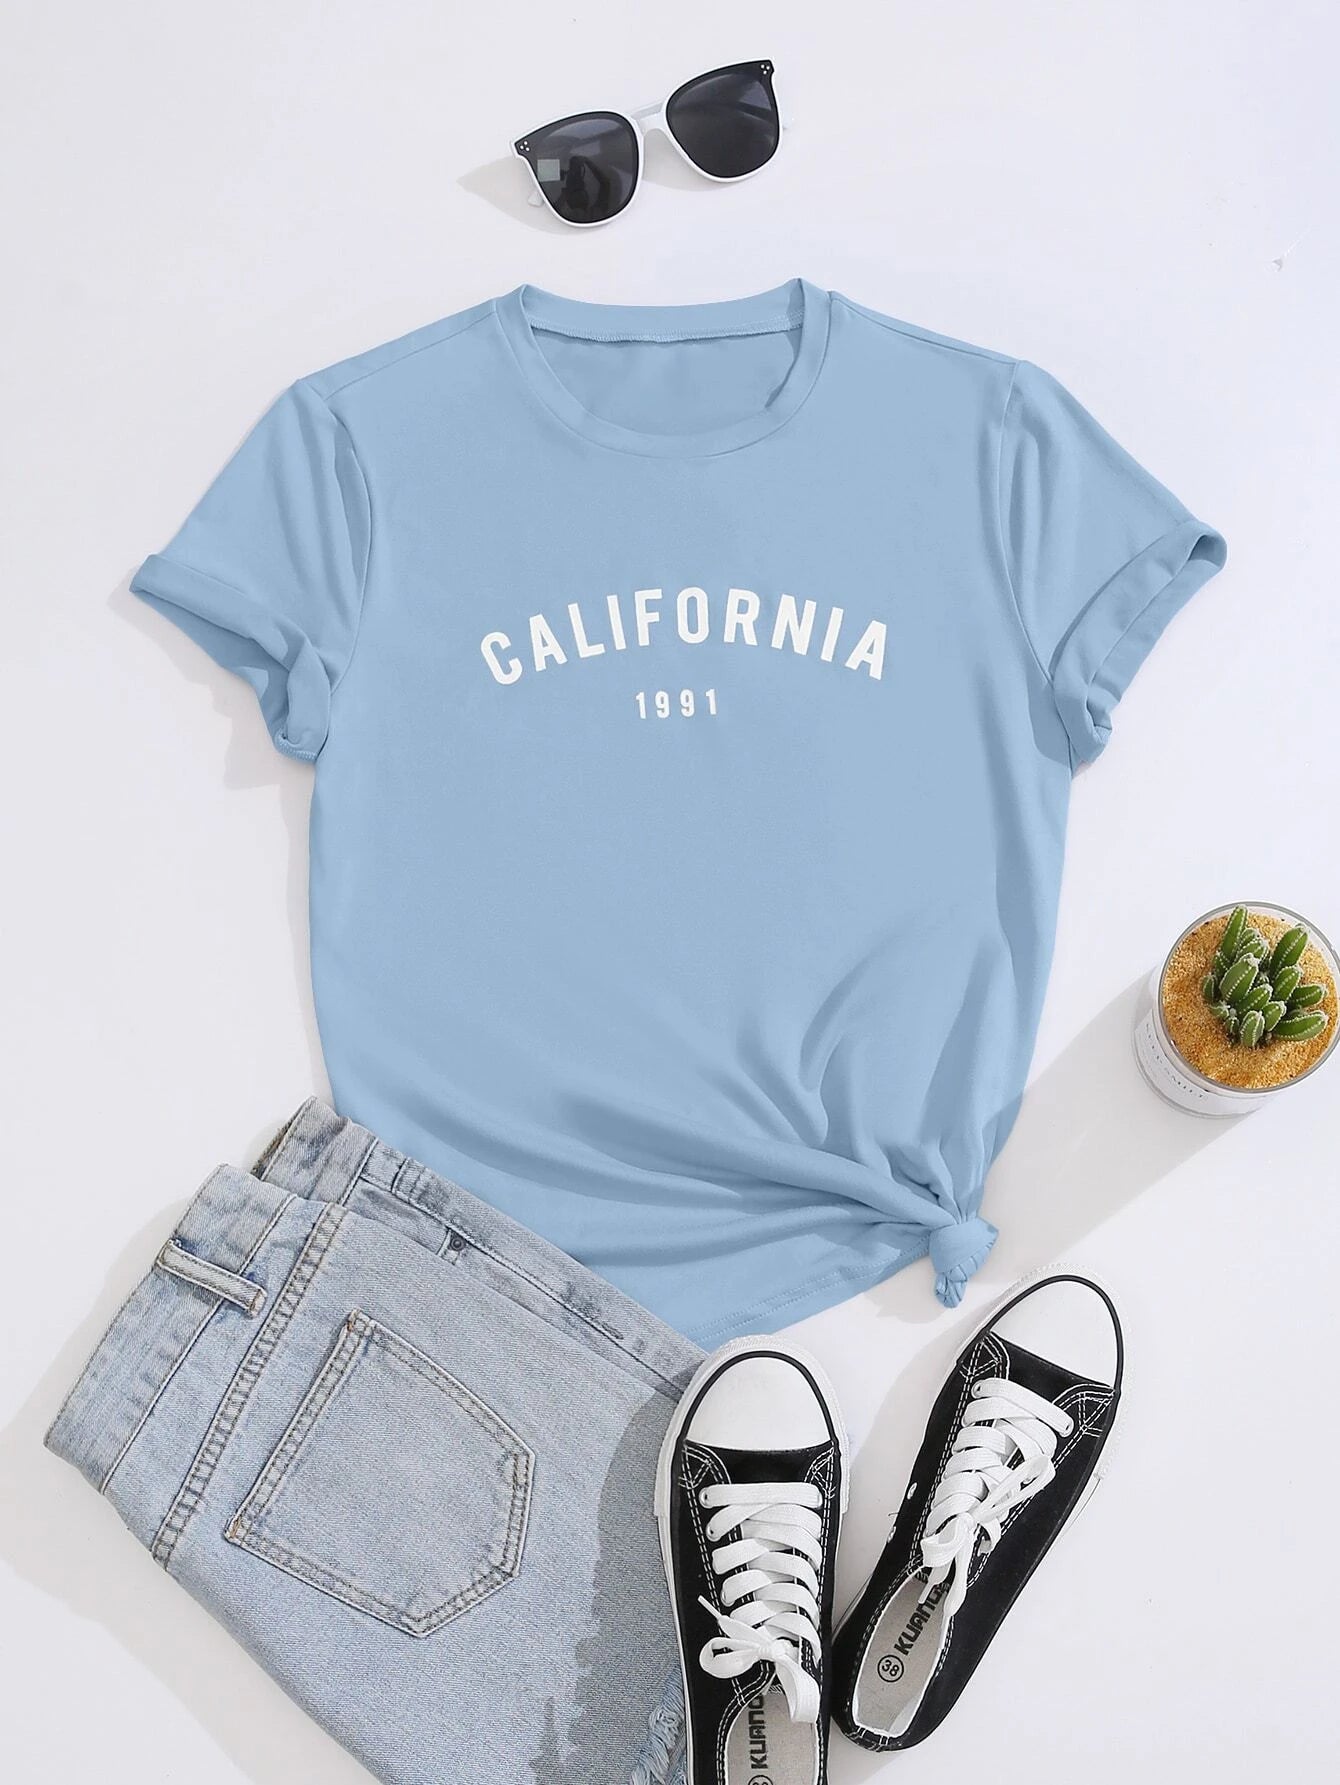 Camiseta Feminina California 1991 Tumblr Aesthetic